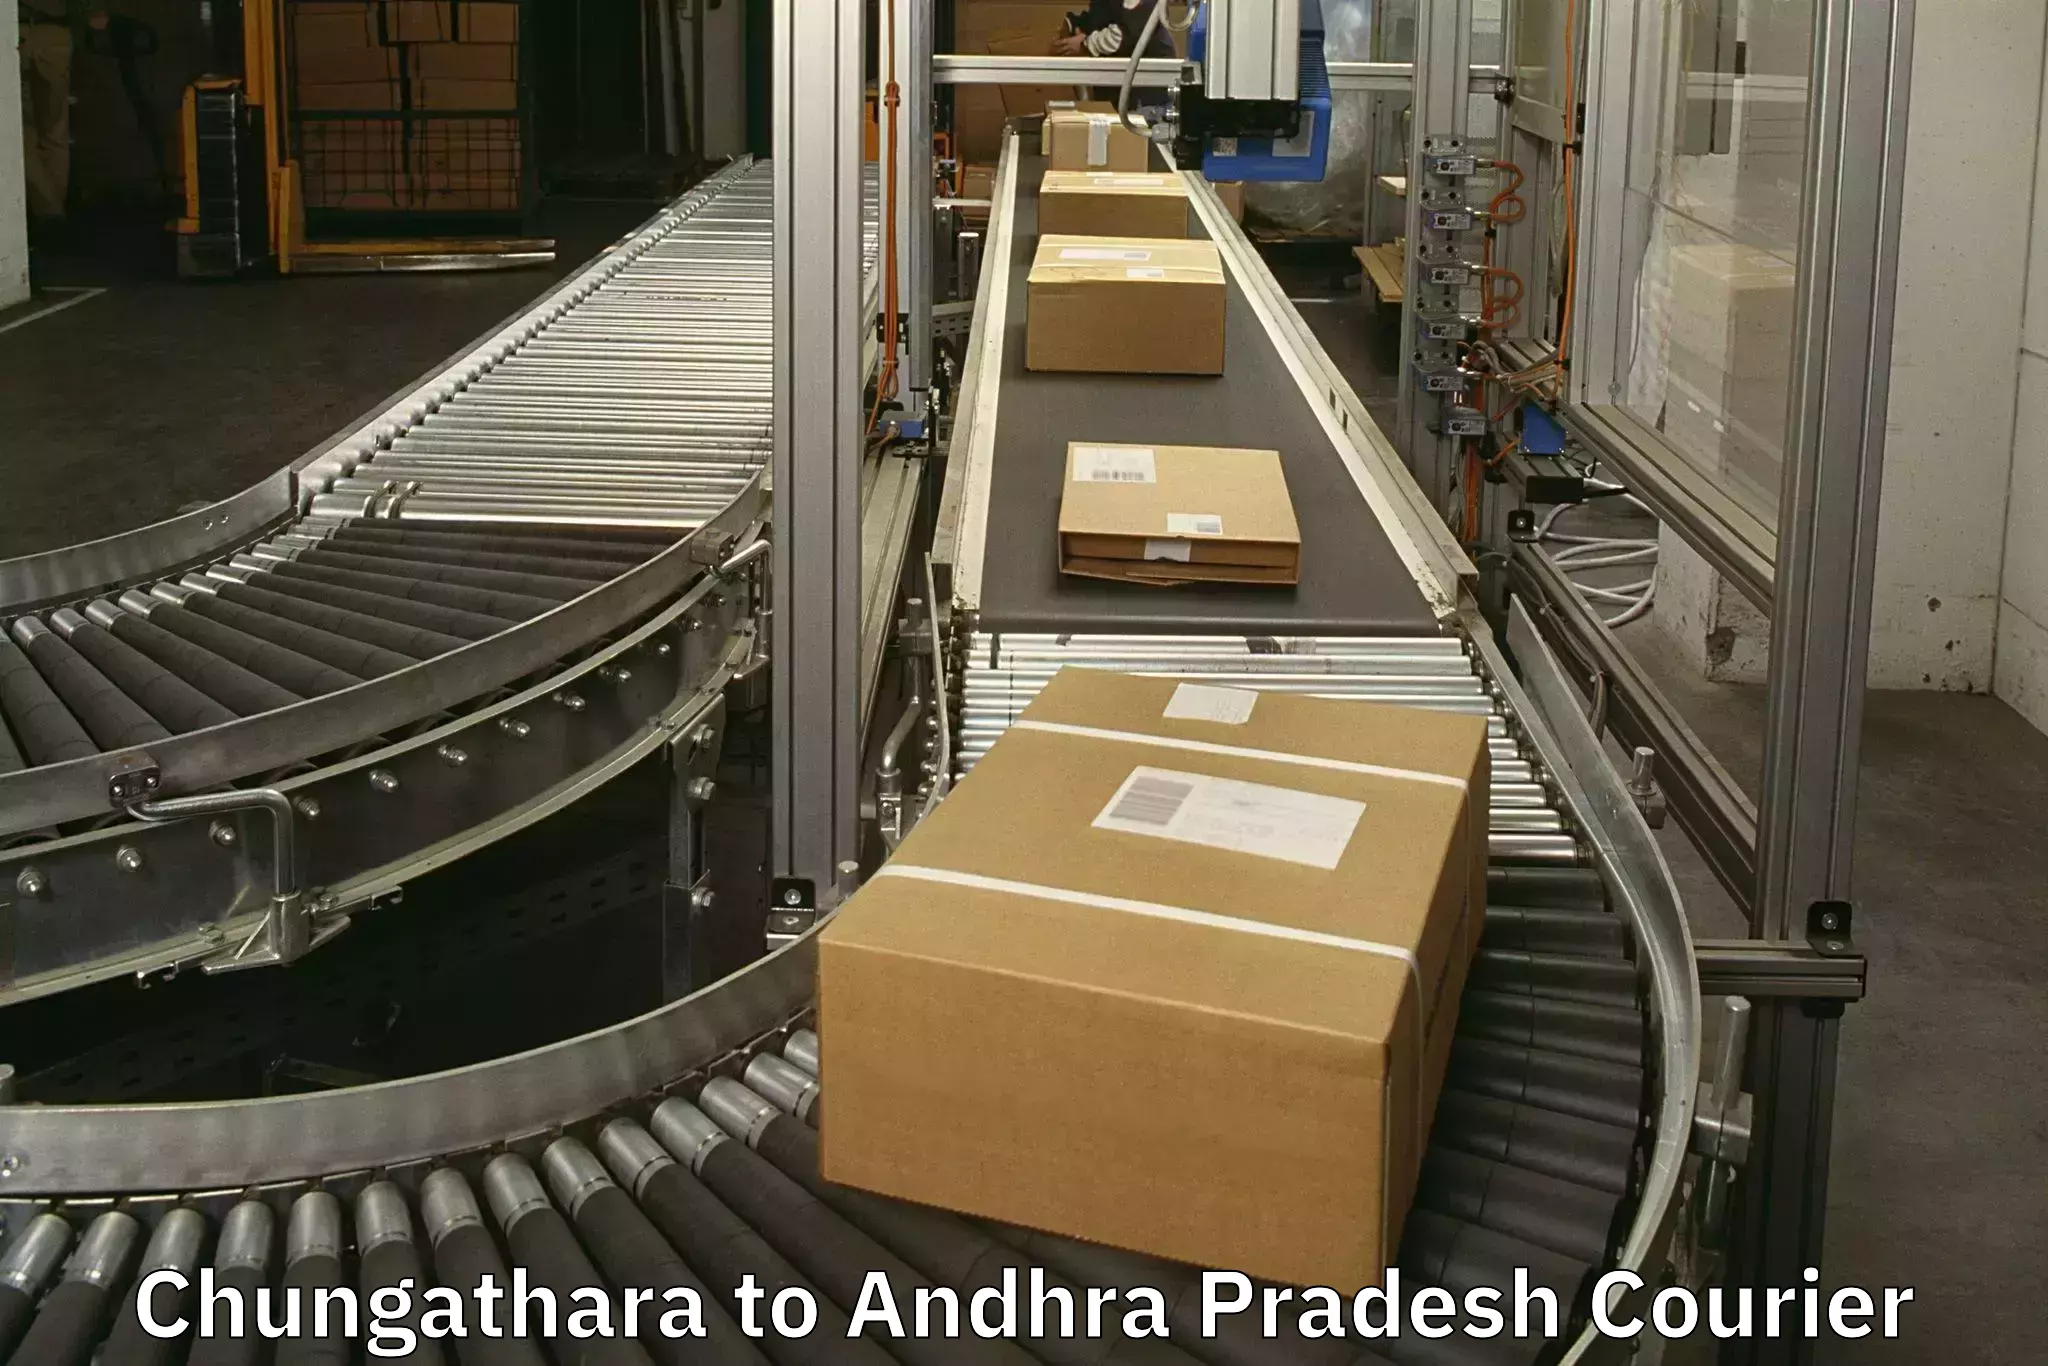 Baggage shipping service in Chungathara to Andhra Pradesh